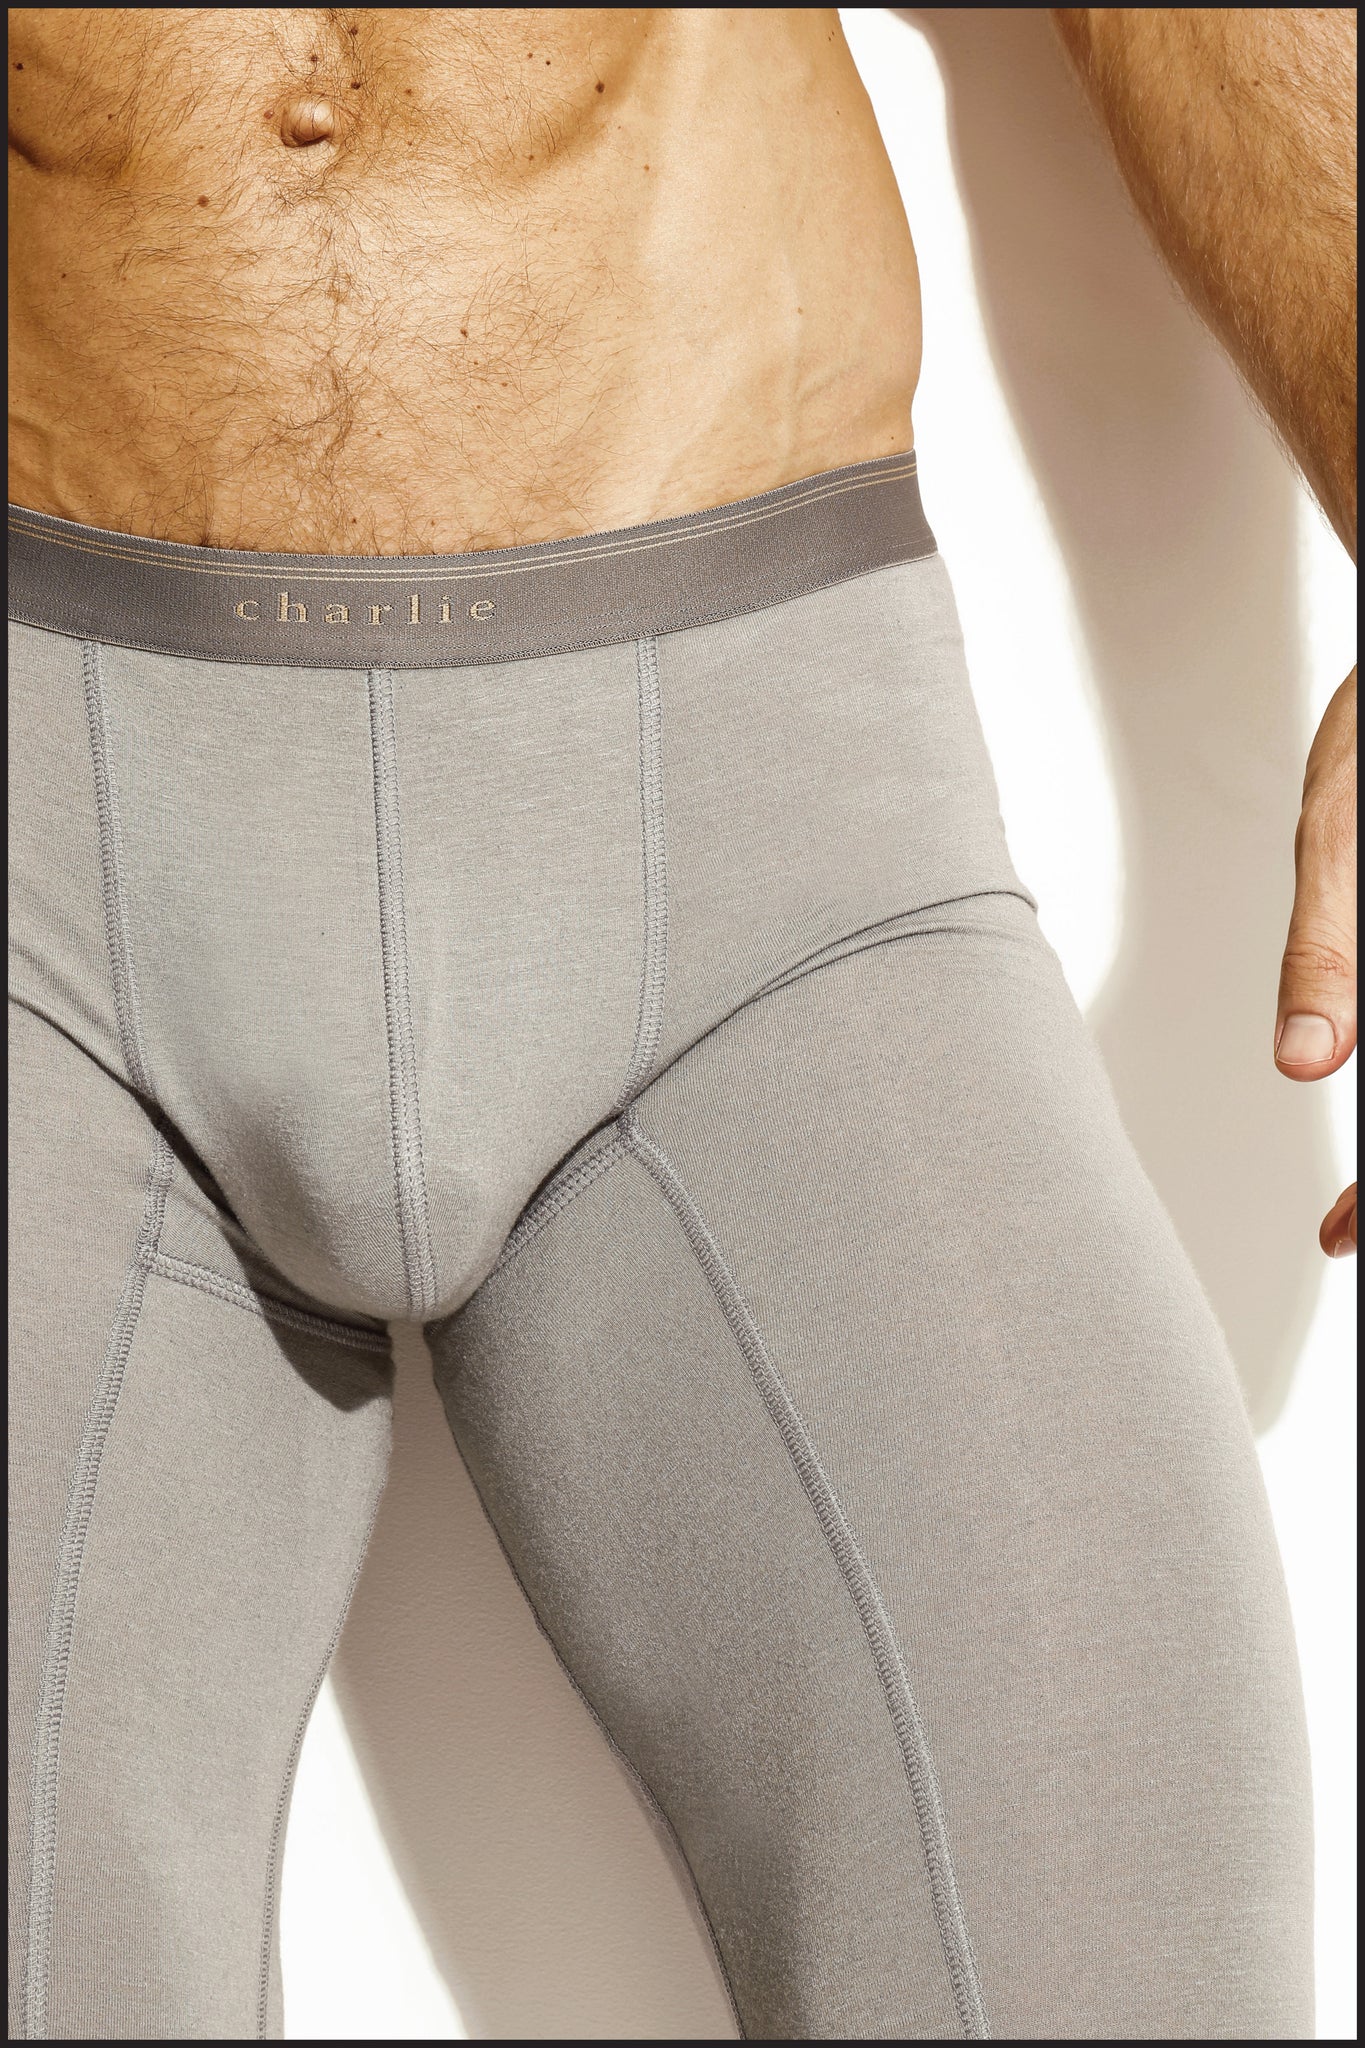 Charlie By Matthew Zink Mens Underwear Cashmere Classic, 52% OFF